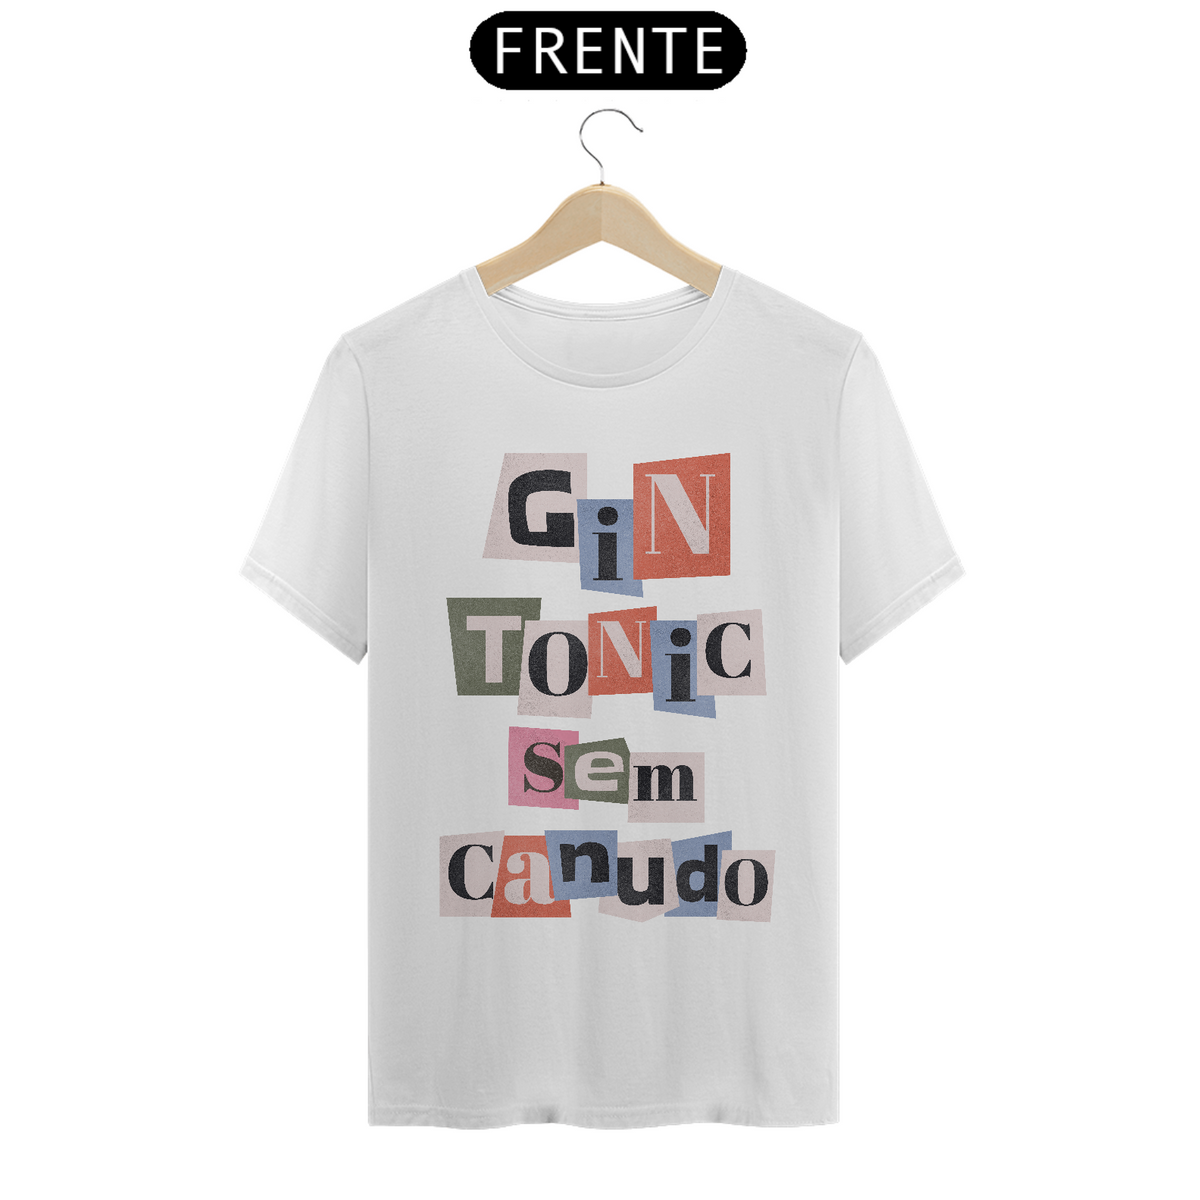 Nome do produto: Camiseta - Gin tonic sem canudo